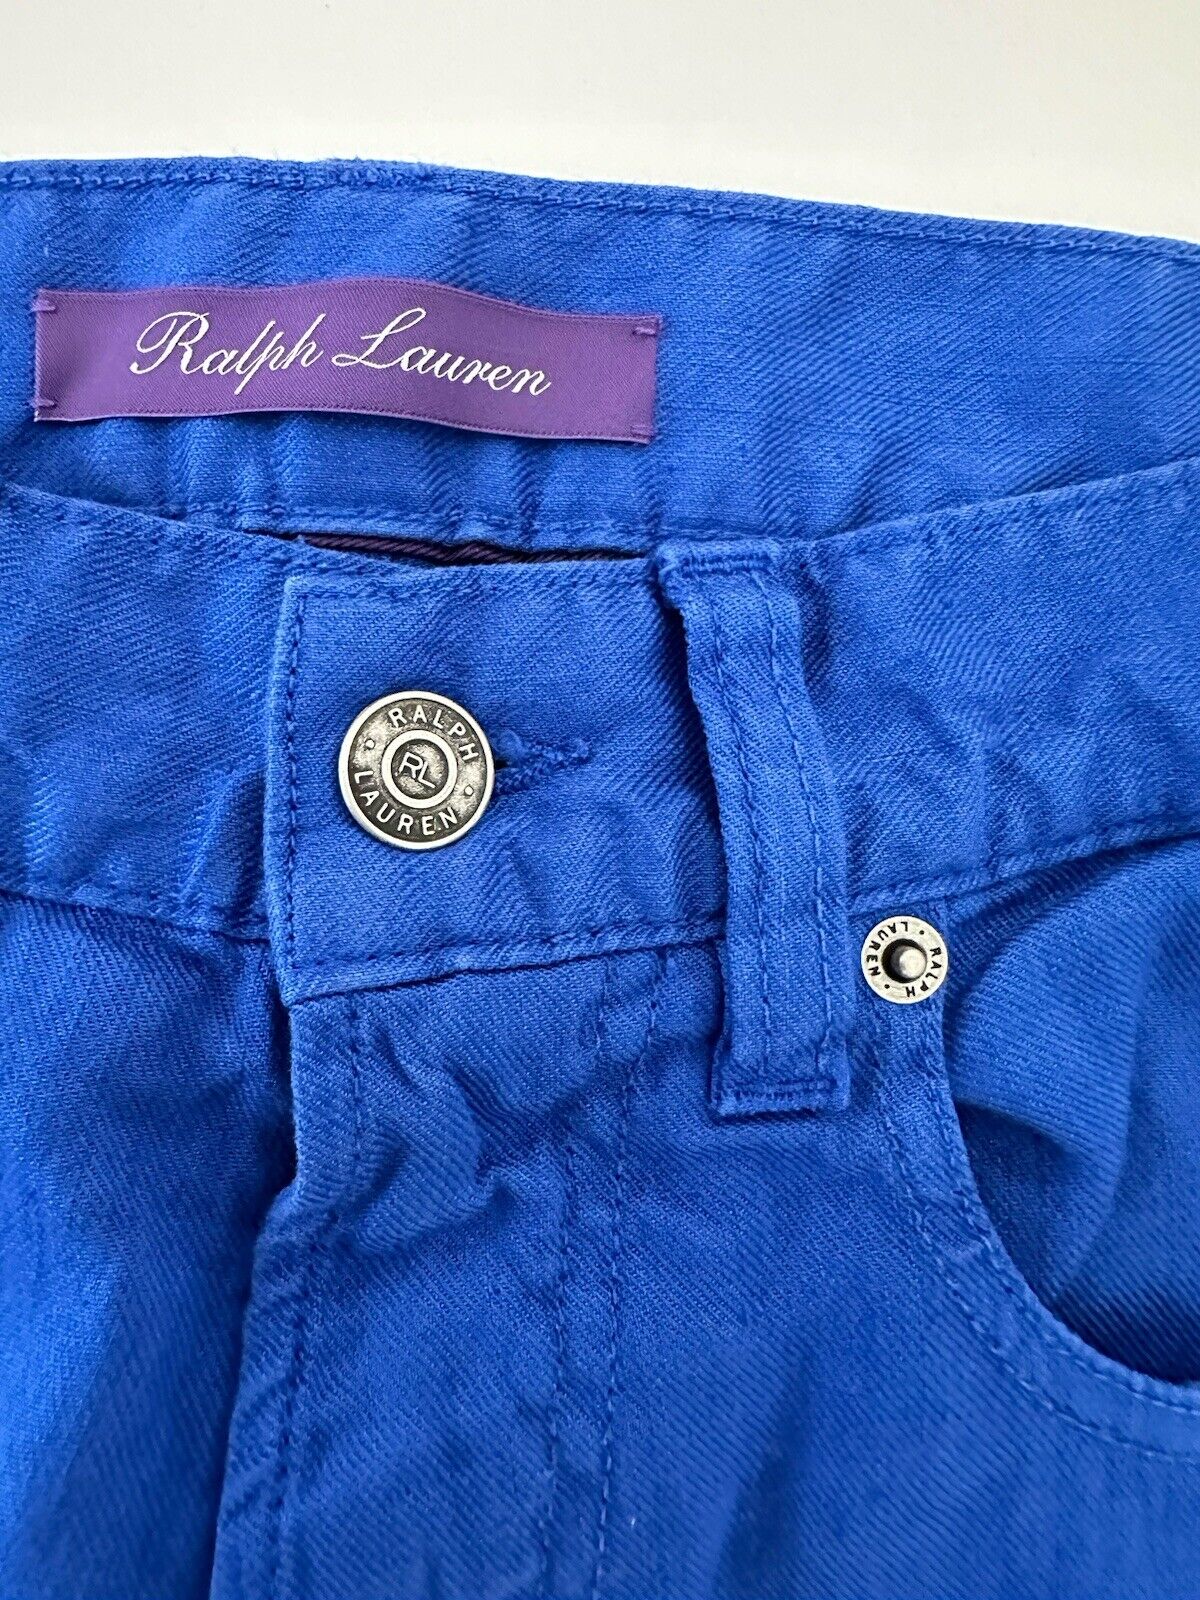 Ralph Lauren Purple Label Men's Blue Linen/Cotton Jeans 28x32 Portugal NWT $595